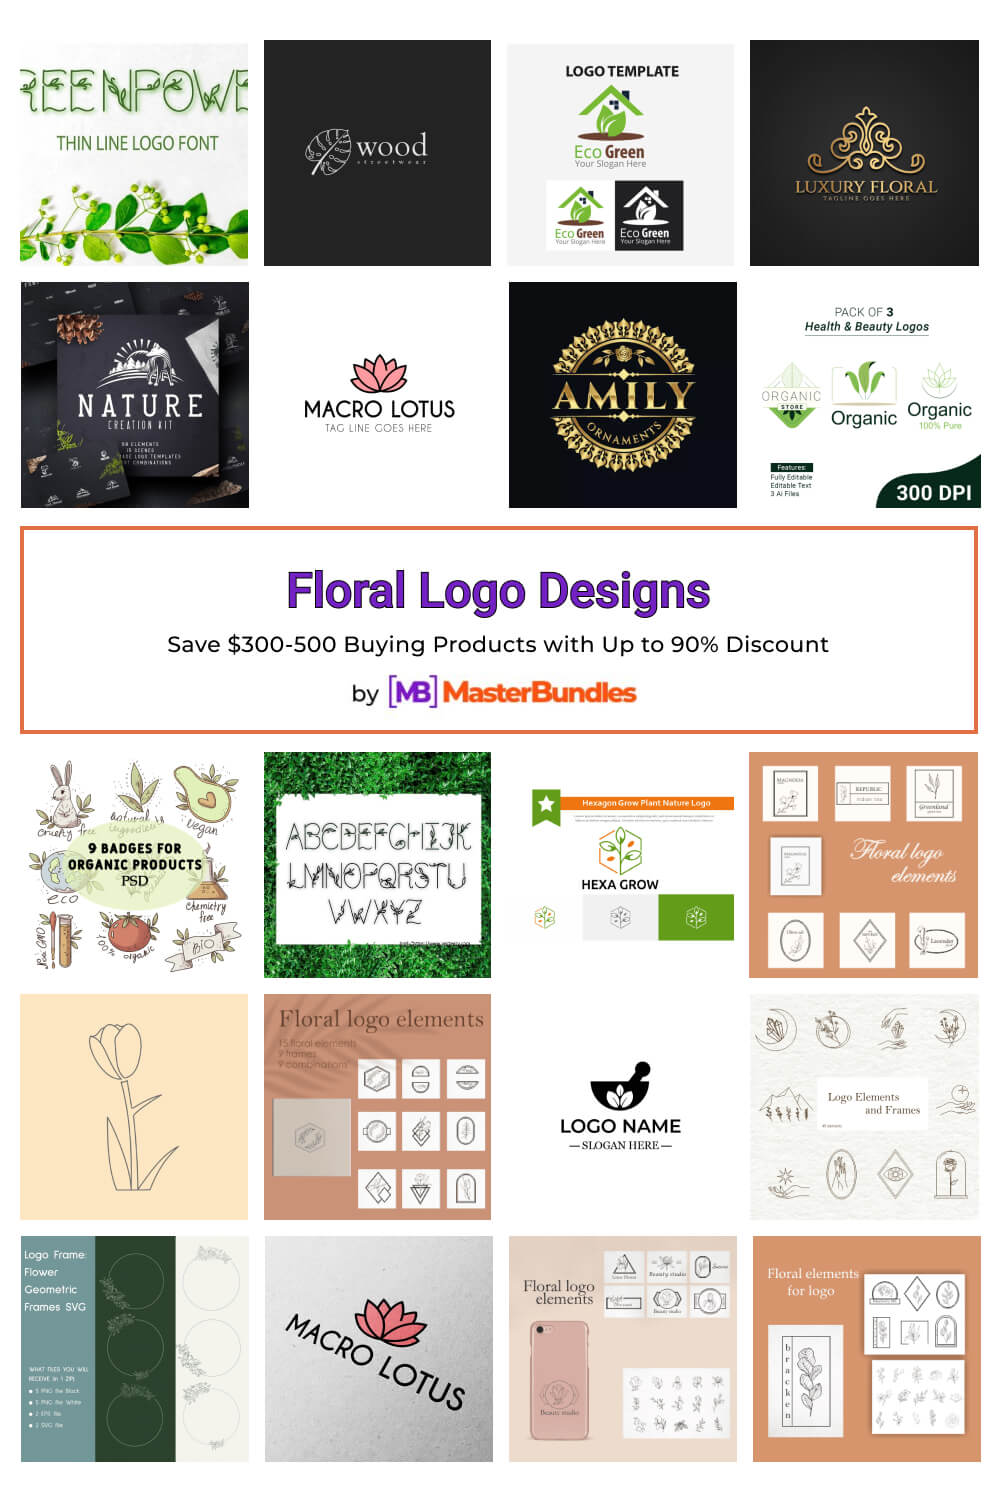 floral logo designs pinterest image.